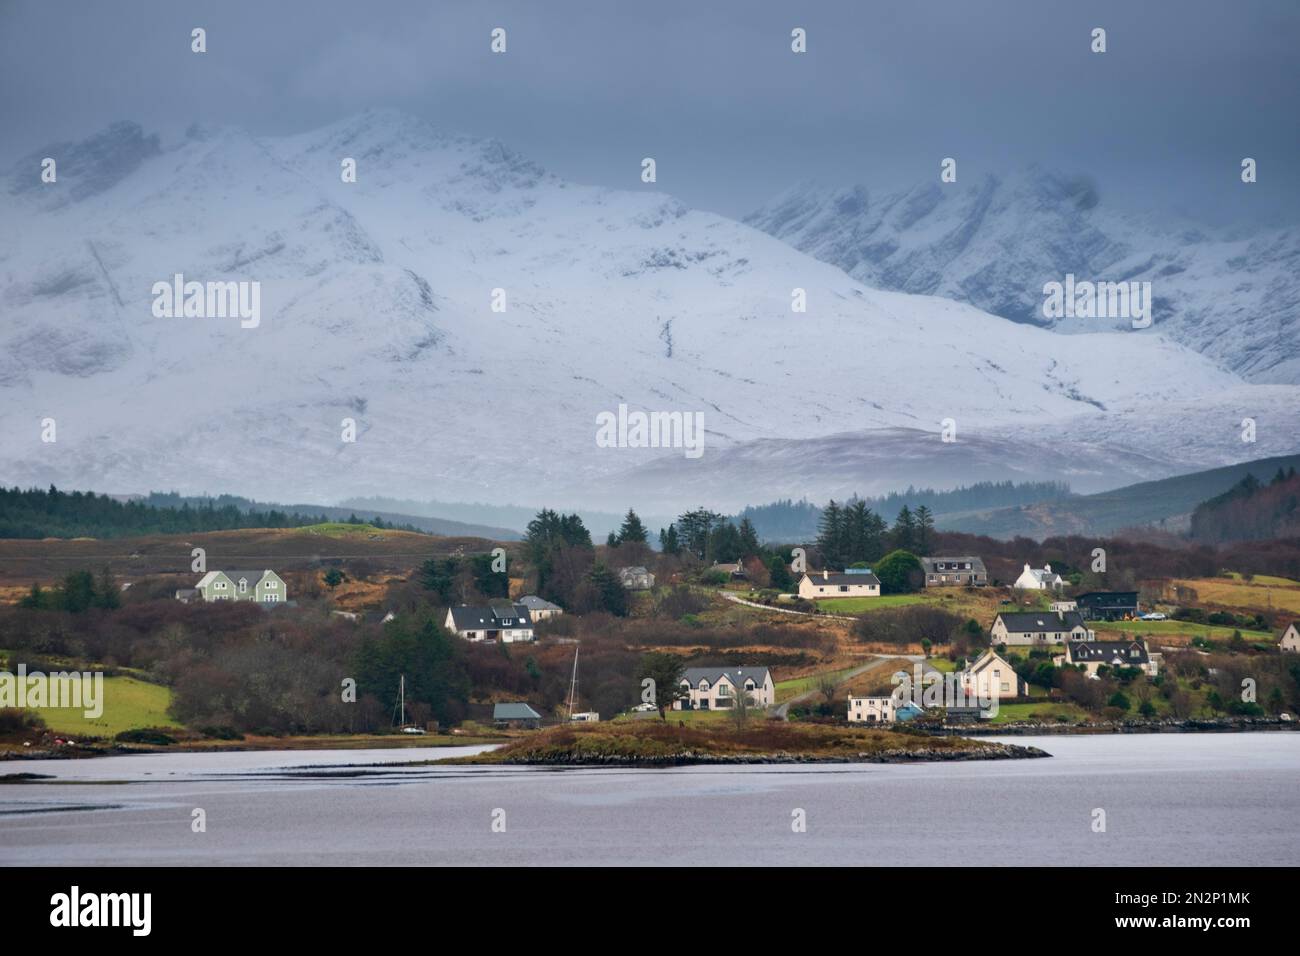 Écosse, île de Skye, village en hiver avec des cottages de crofters blancs, des montagnes enneigées et aucun peuple Banque D'Images